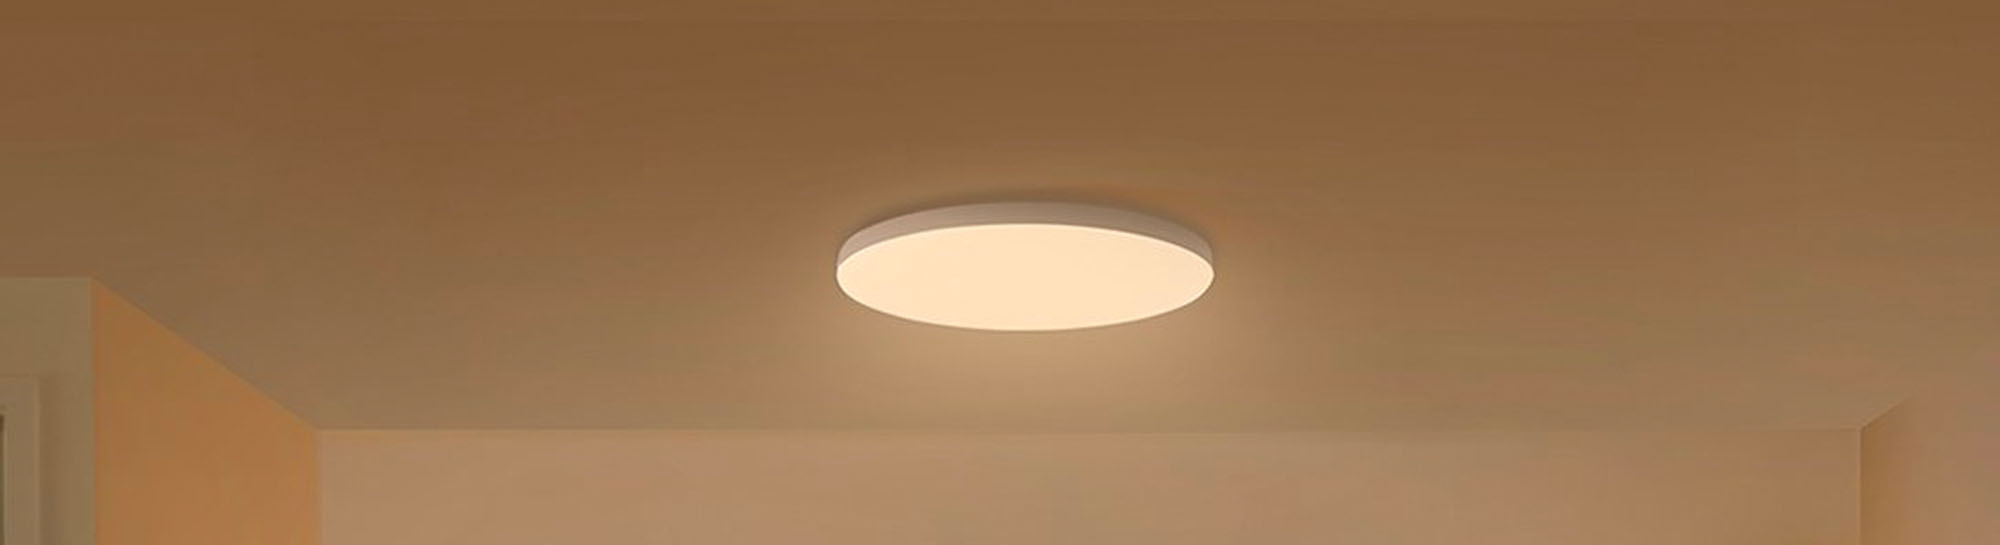 Mi Smart LED Ceiling Light